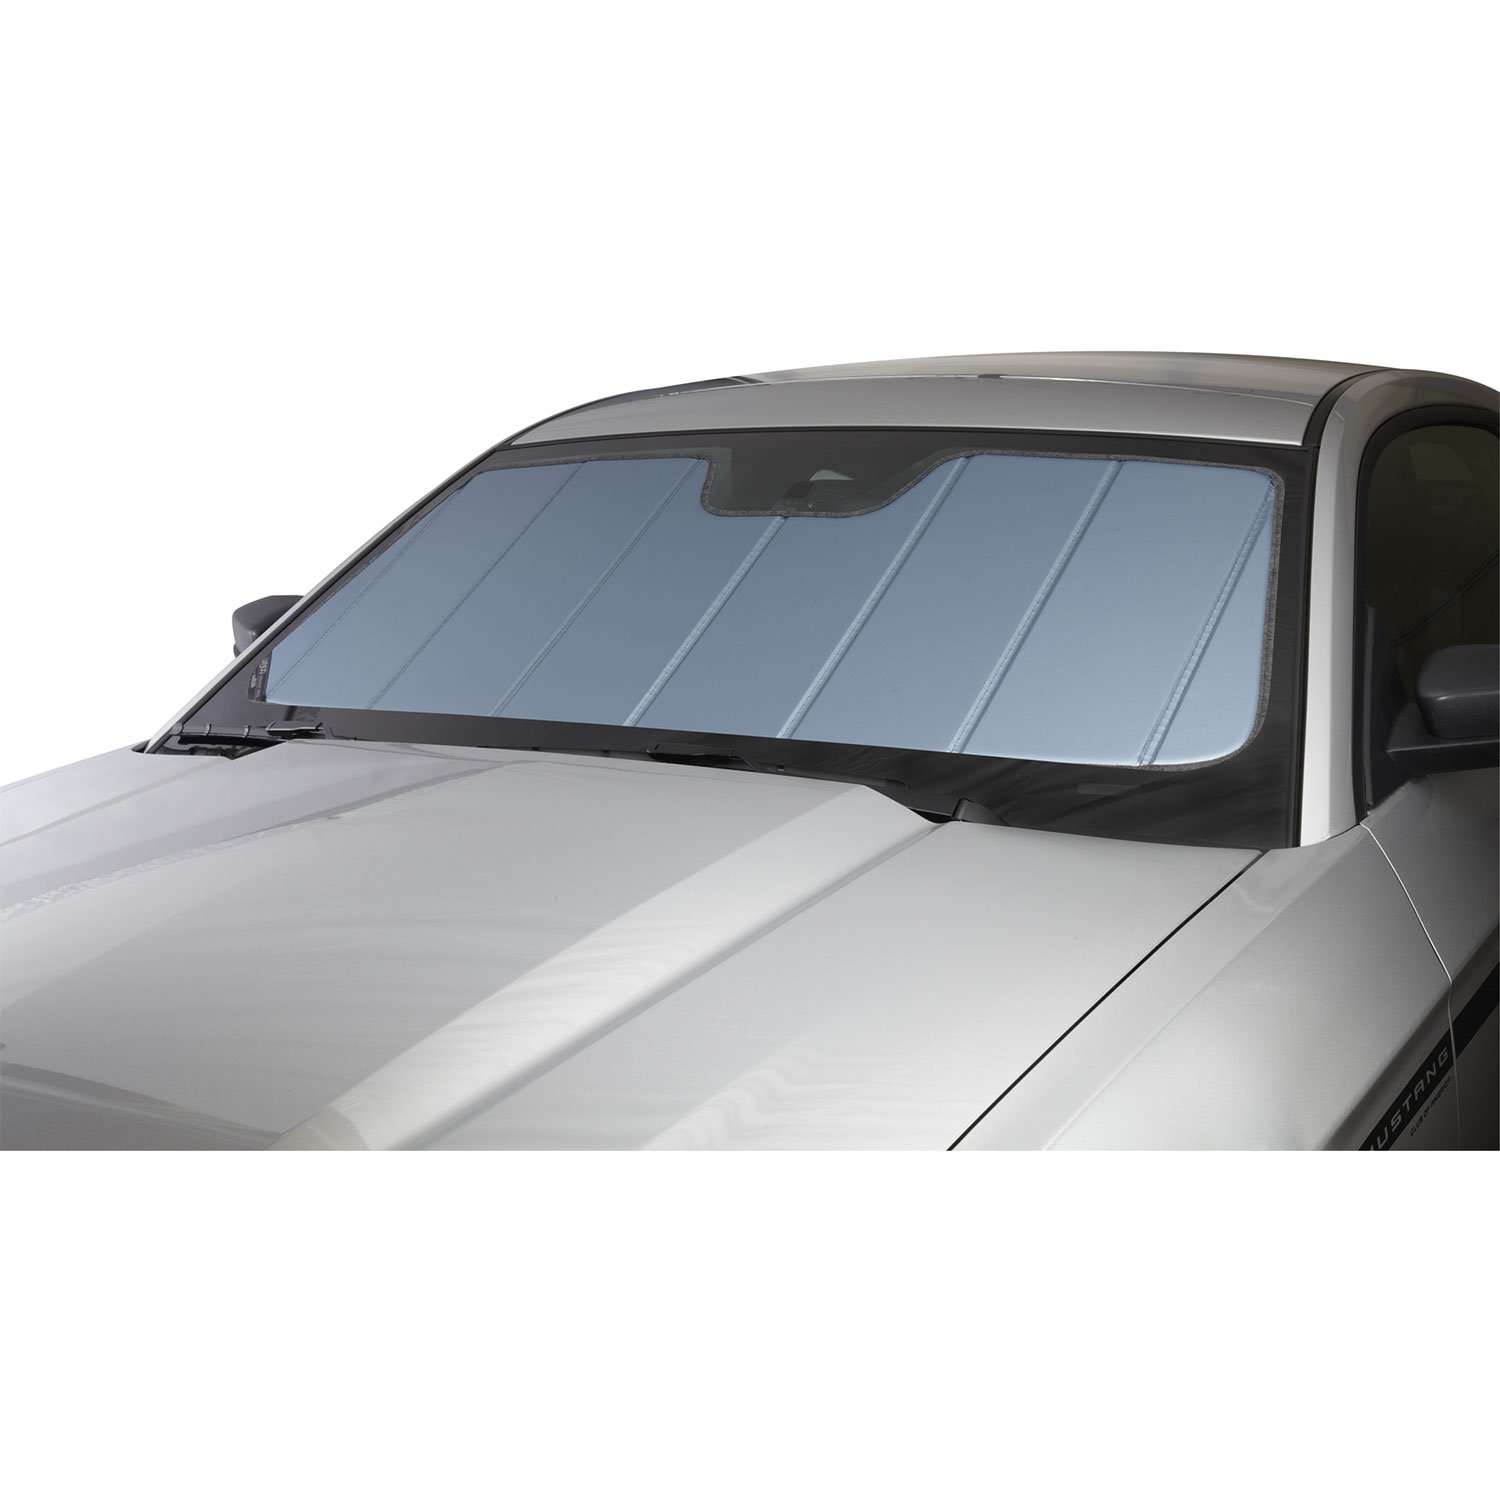 Covercraft UVS100 Sonnenschutz | UV11100BL | passend für Mercedes-Benz GLK-Klasse 2010-2015, blau metallic von Covercraft